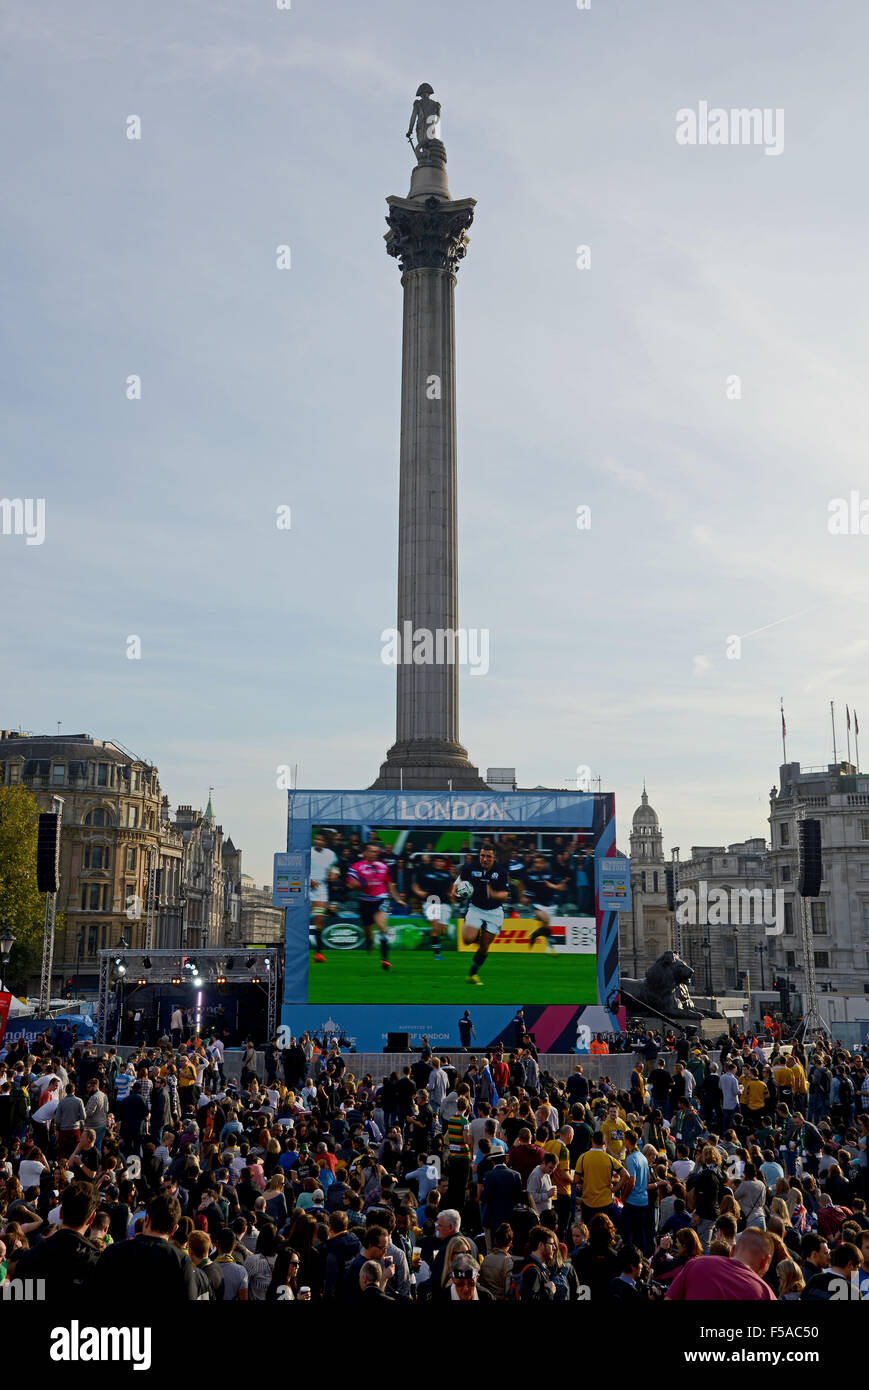 Finale de la Coupe du Monde de Rugby étant diffusés en direct sur grand écran à Trafalgar Square, Londres, Angleterre, Royaume-Uni Banque D'Images